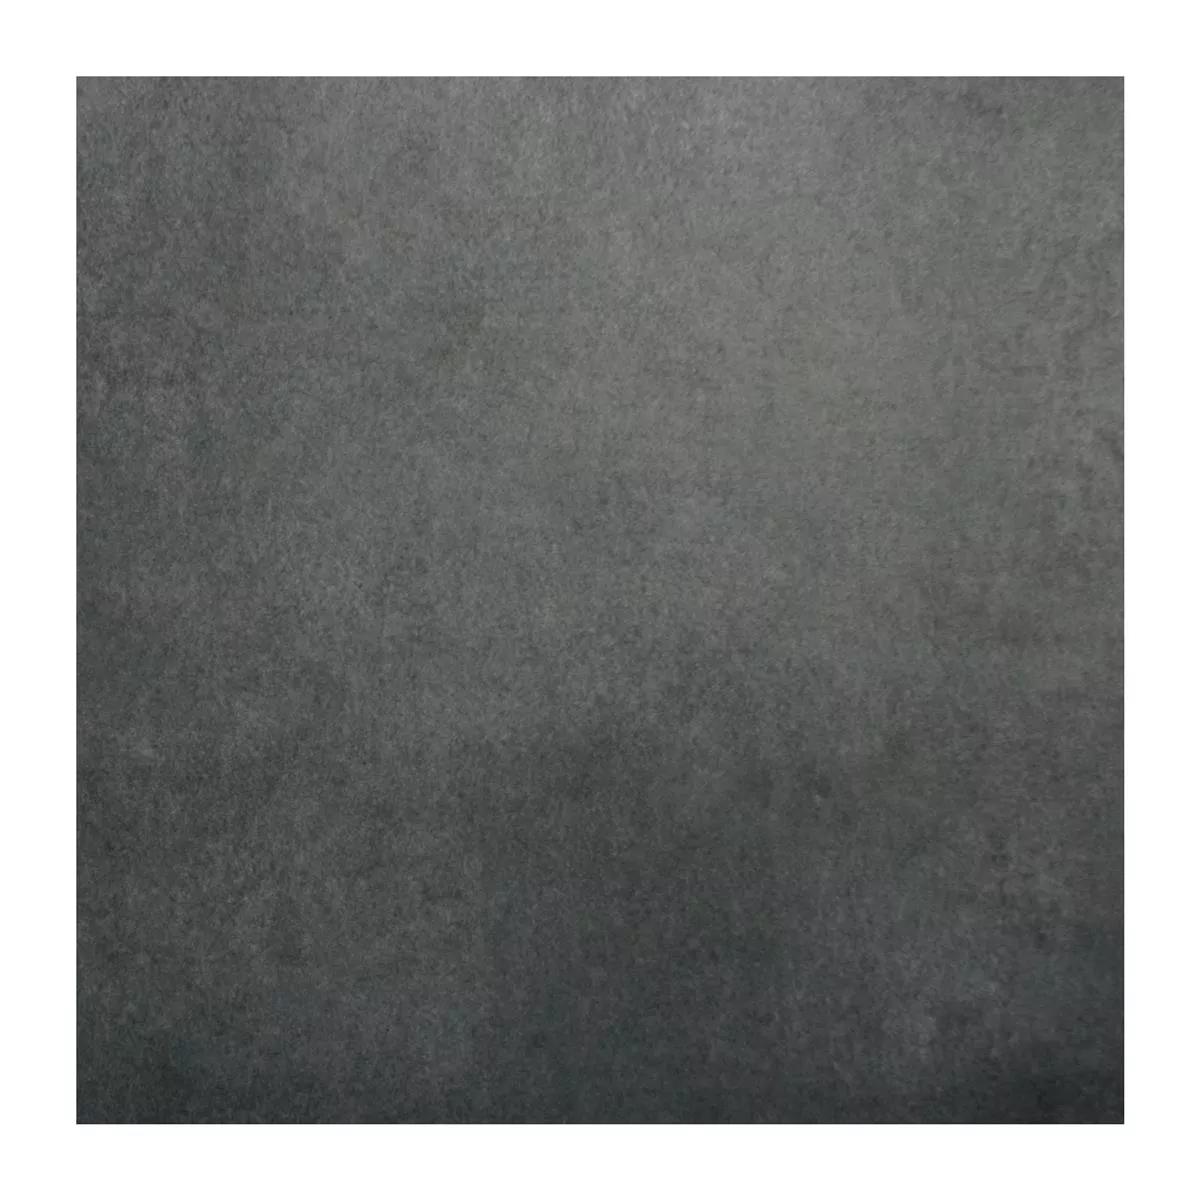 Πρότυπο Πλακάκι Δαπέδου Συγκεκριμένη Εμφάνιση Alpago Ανθρακίτης 40x40cm